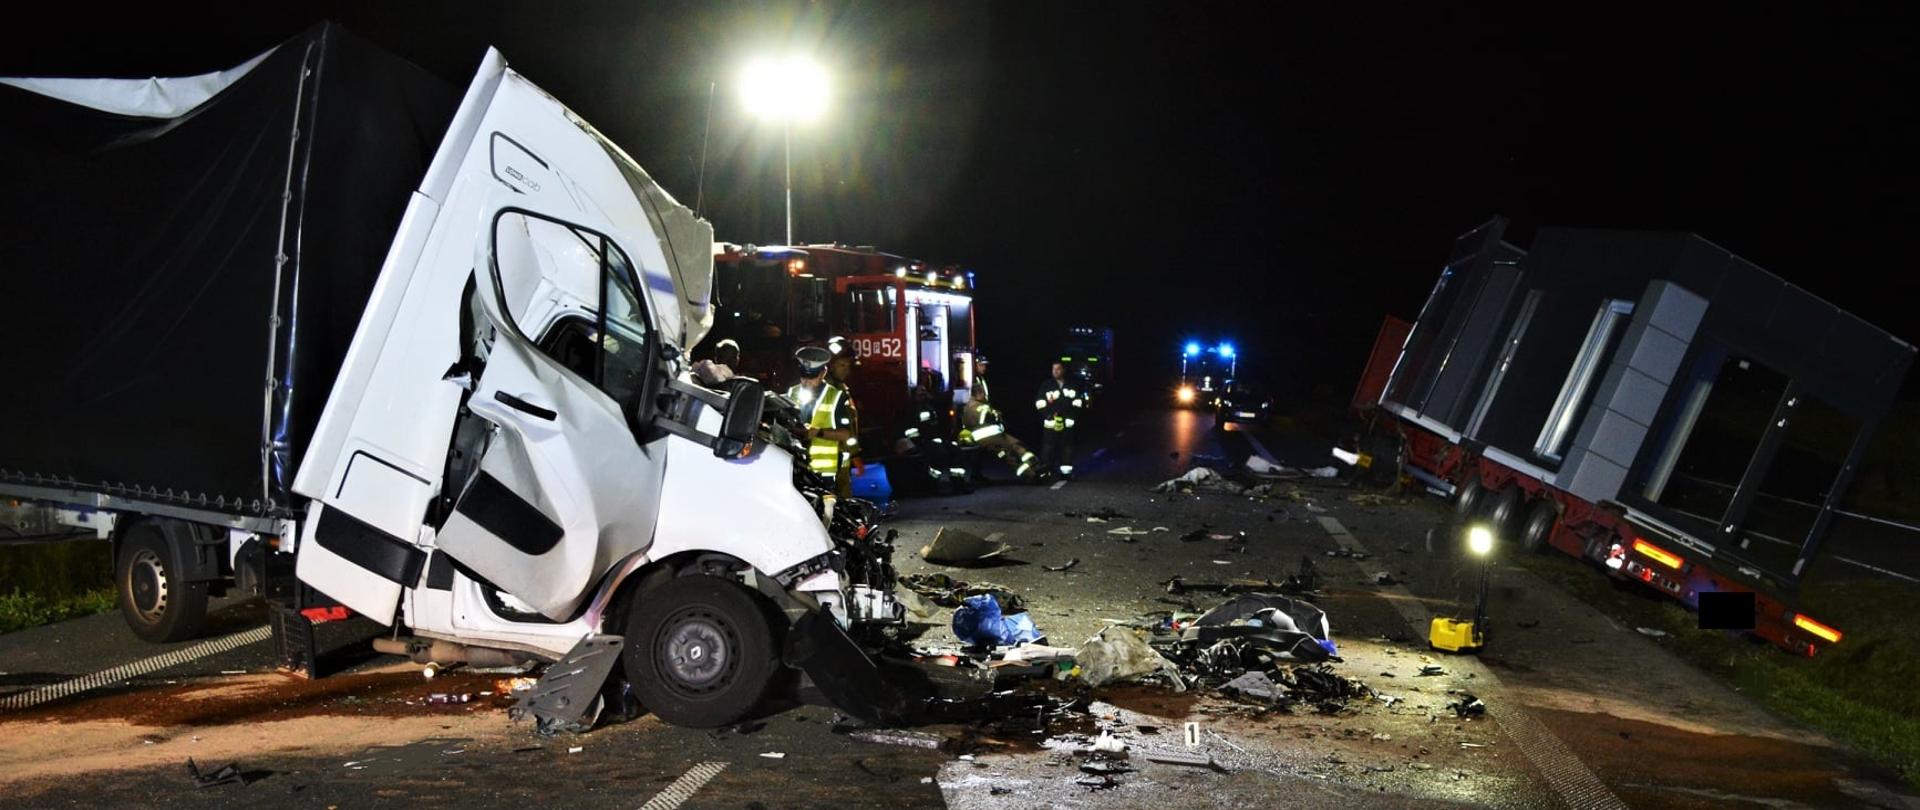 Po lewej widać uszkodzony przód samochodu dostawczego, po prawej samochód ciężarowy w rowie, w oddali samochód straży pożarnej, jest noc